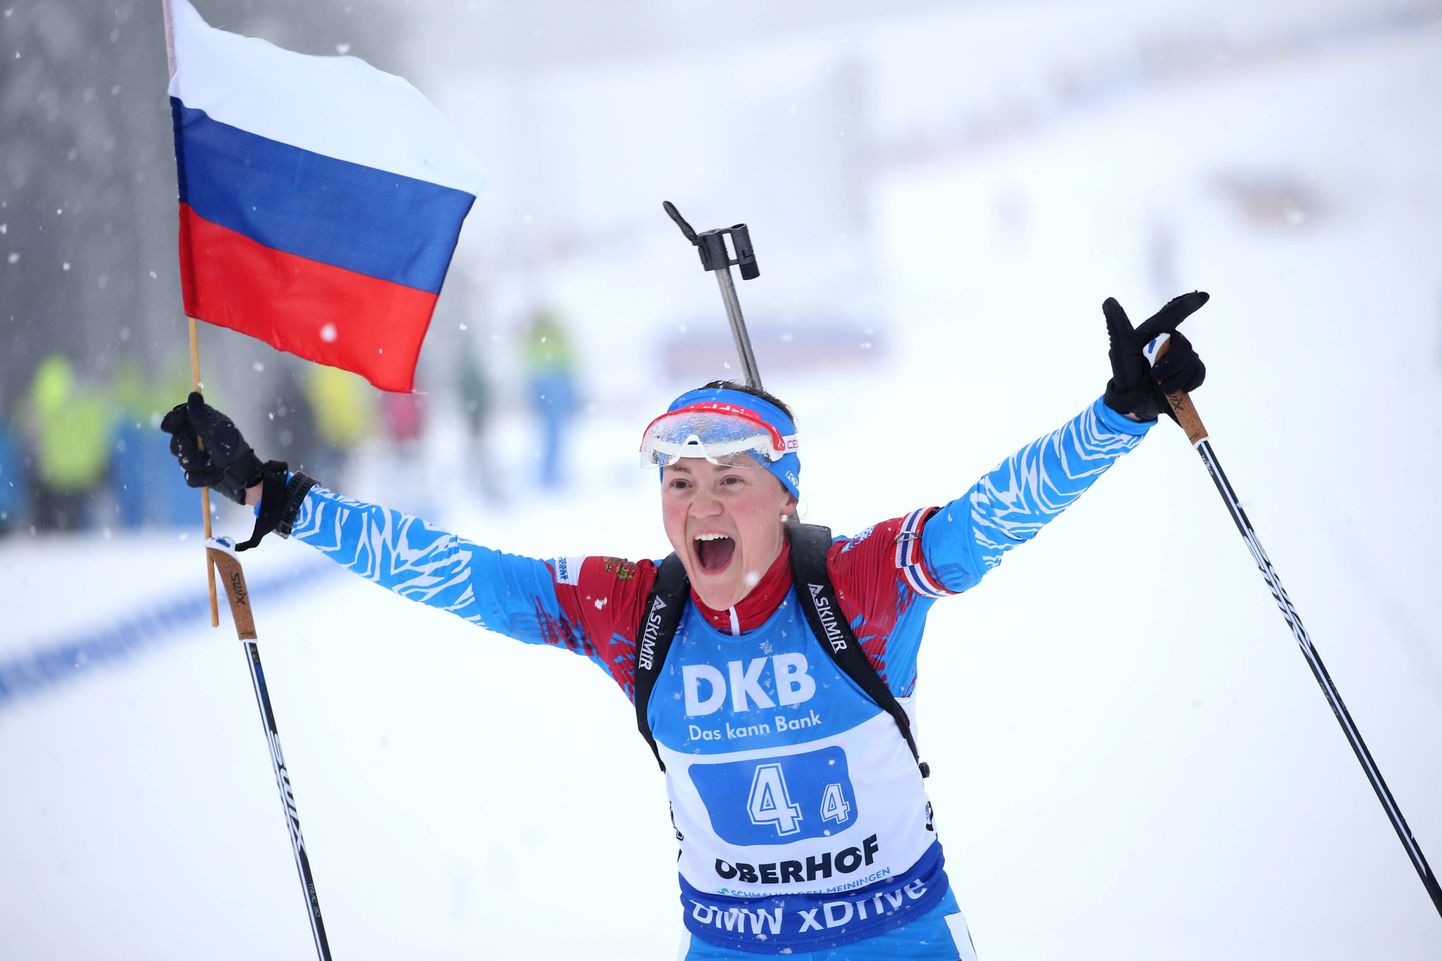 Venemaa laskesuusanaiskonna ankrunaine Jekaterina Jurlova-Percht 2019. aastal Oberhofi MK-etapil, kui Venemaa võitis naiste teatesõidu. Foto on illustratiivne.